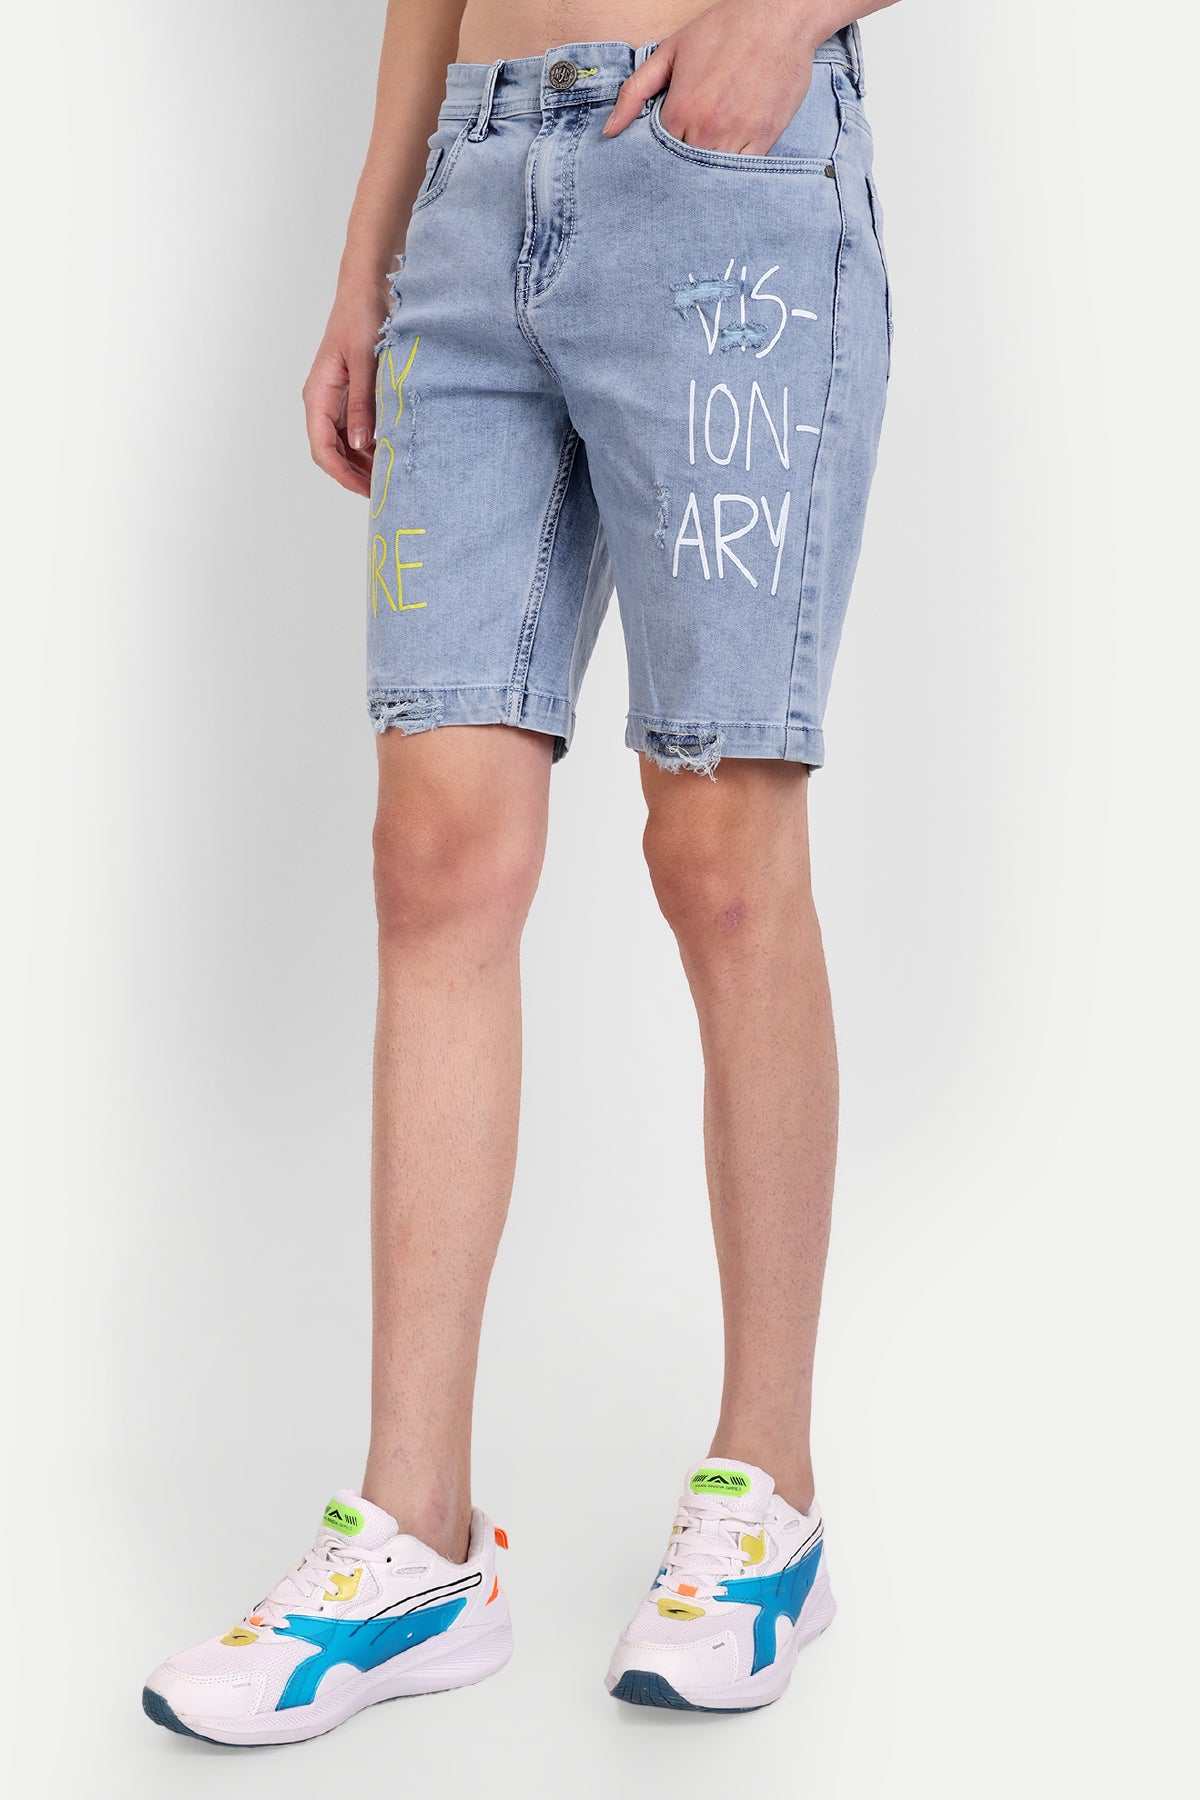 ZLZ Short Jeans for Men Slim Fit, Men's Fashion Design Stretch Slim Black Denim  Shorts Pants with Holes, Size 28 at Amazon Men's Clothing store